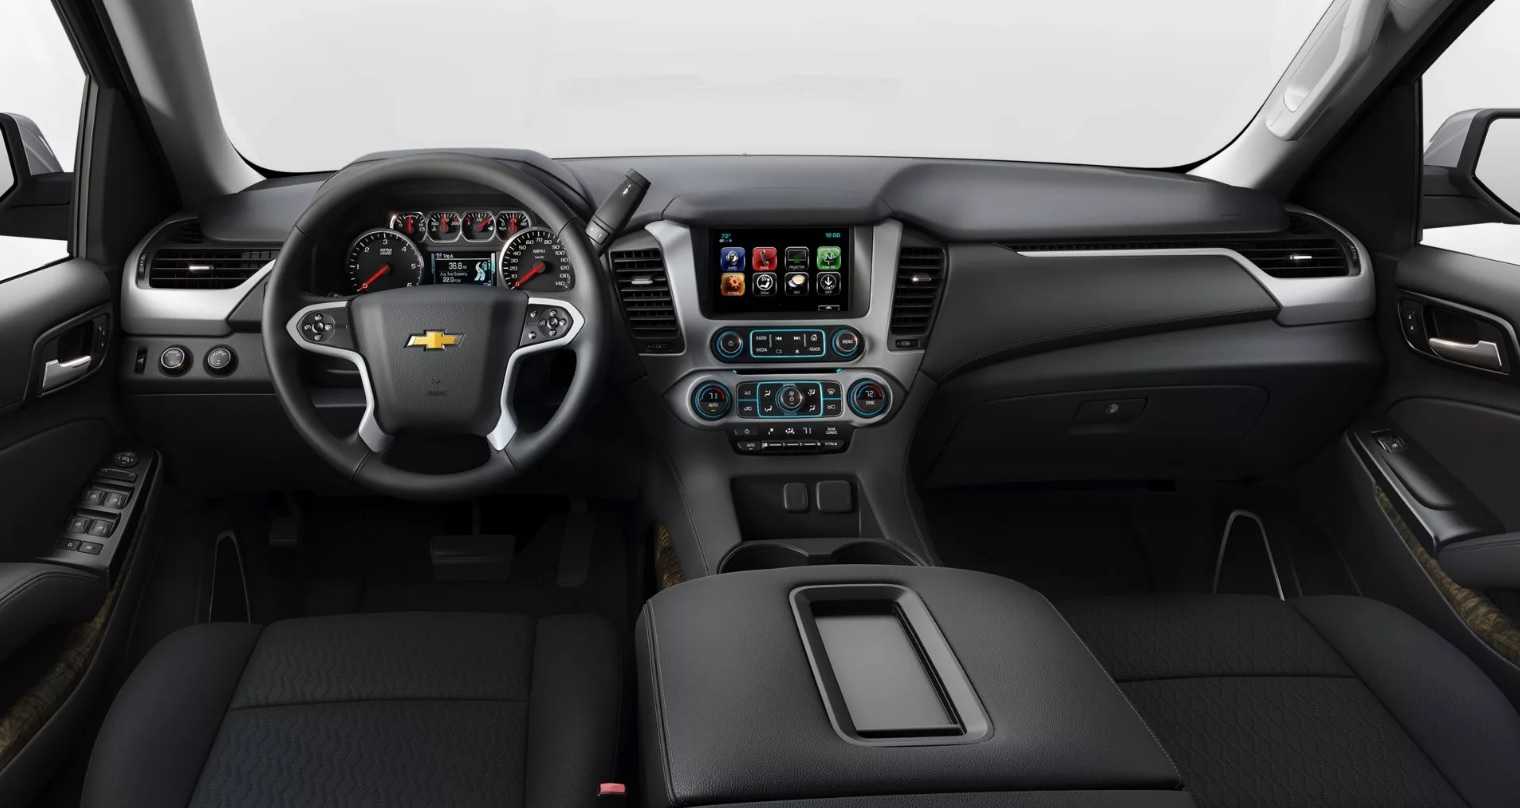 Российская реализация полноразмерного внедорожного автомобиля Chevrolet Tahoe нового поколения стартует уже в следующем месяце Данный внедорожник